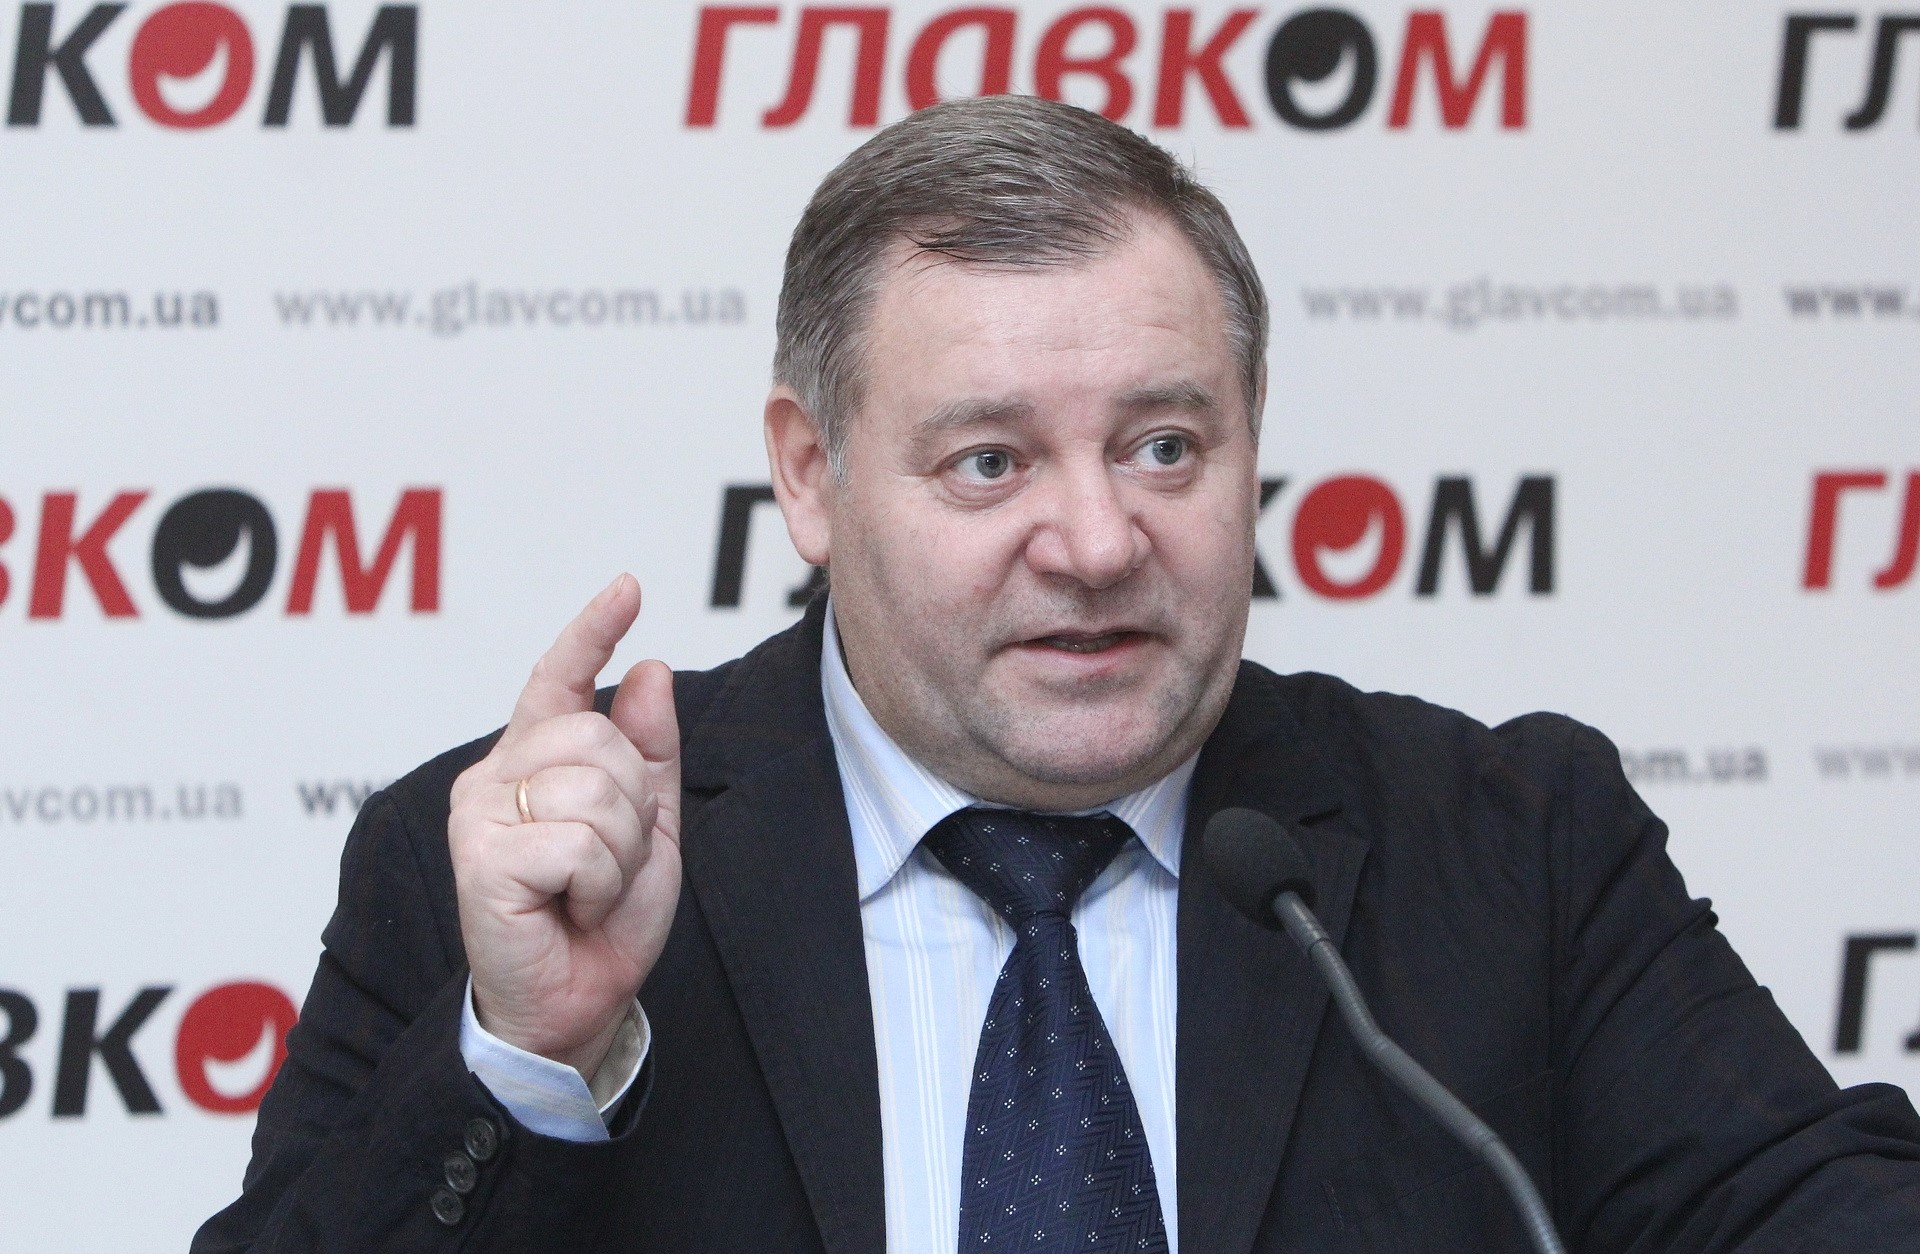 Віктор Колбанцев, адвокат, голова ГО «Майдан – громадський контроль». Фото: Главком/Станіслав Груздєв